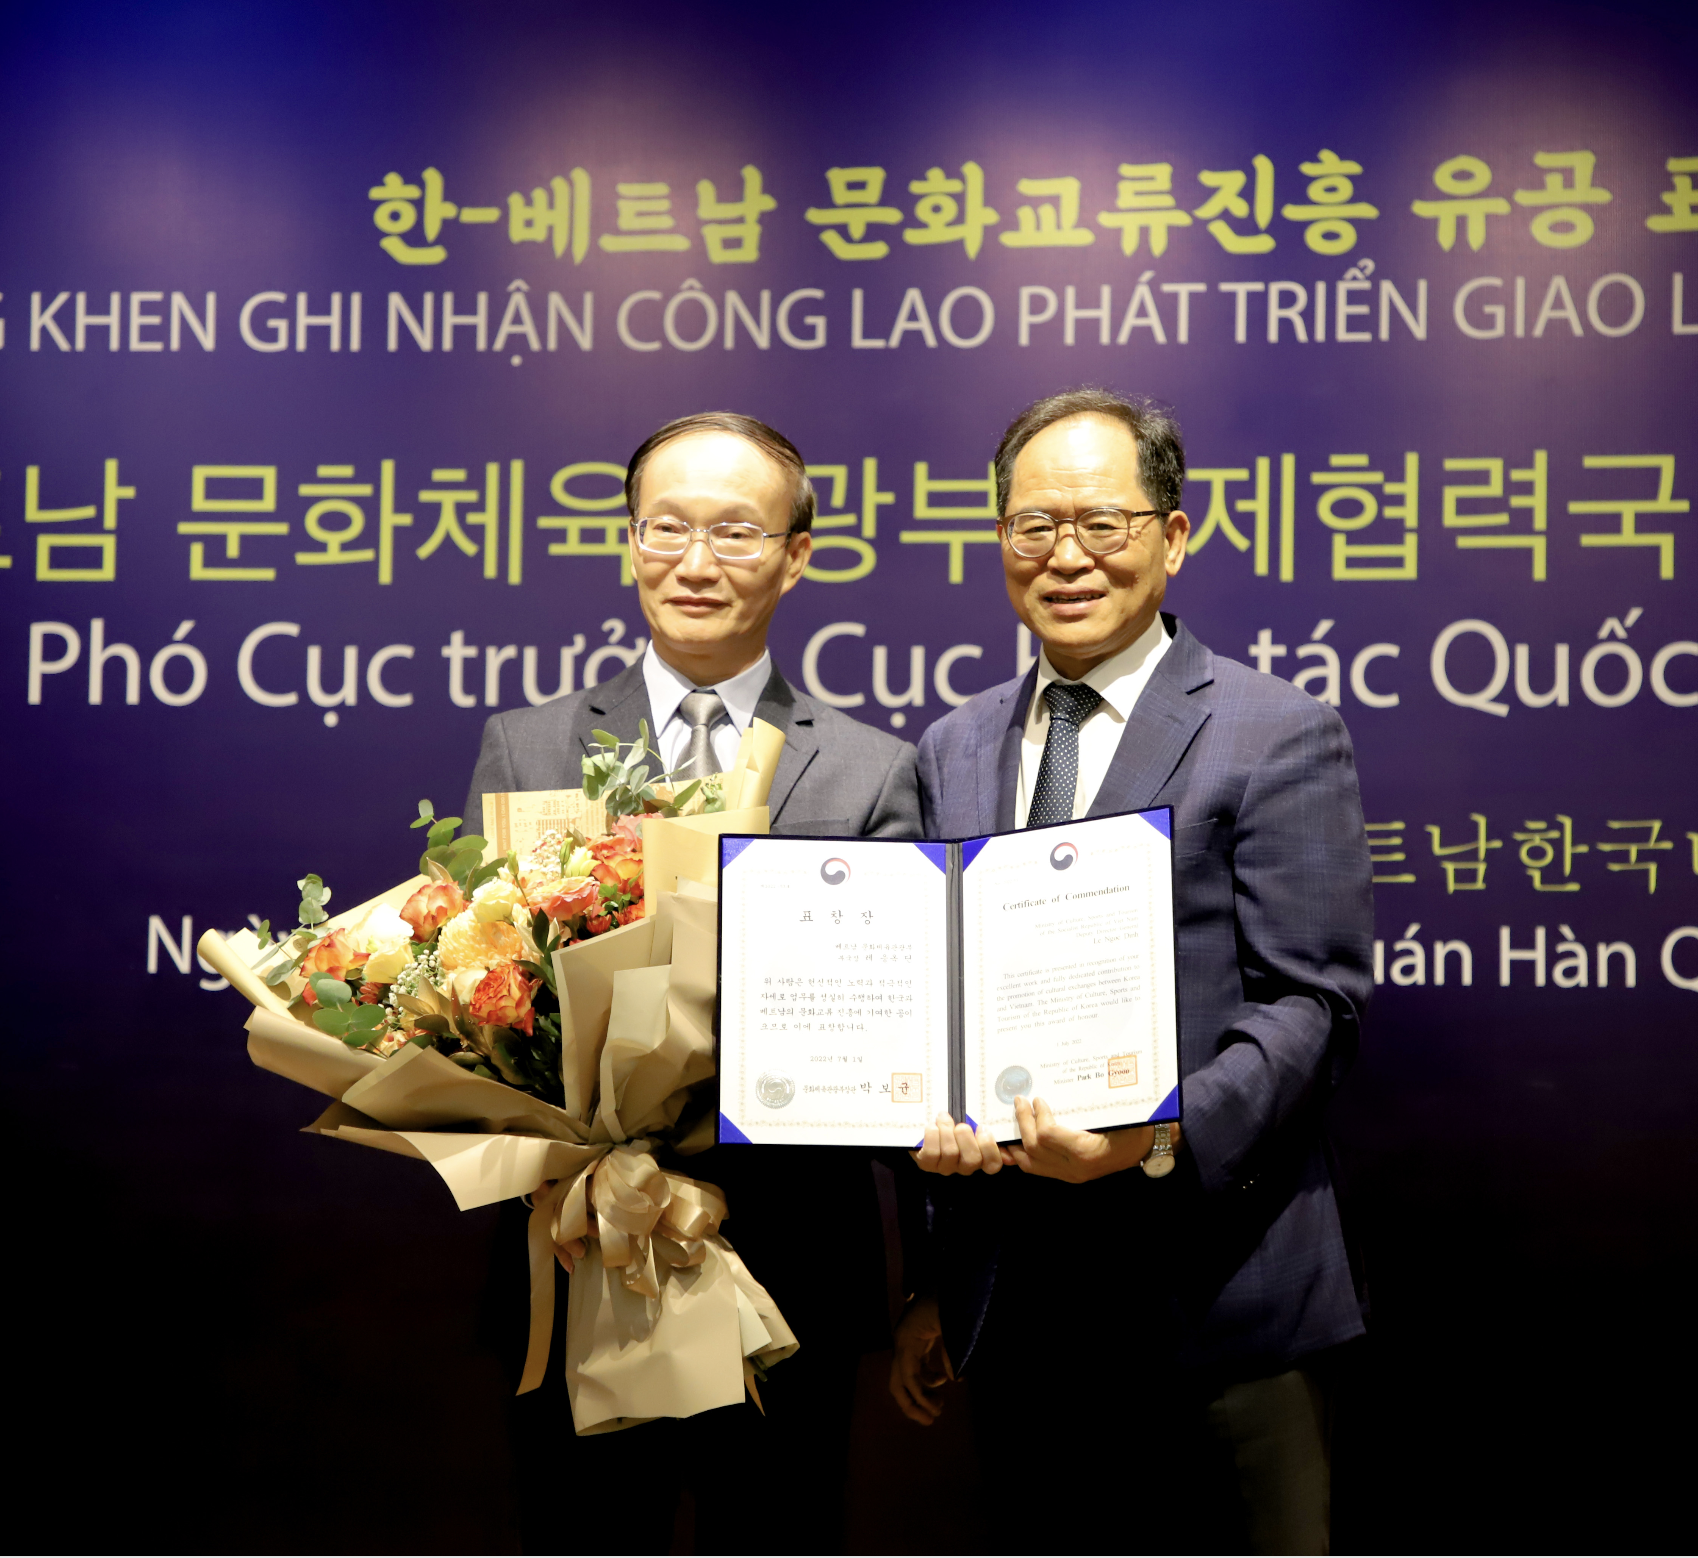 Ông Lê Ngọc Định, Phó Cục trưởng Cục Hợp tác quốc tế nhận bằng khen của Bộ trưởng Bộ Văn hóa, Thể thao và Du lịch Hàn Quốc